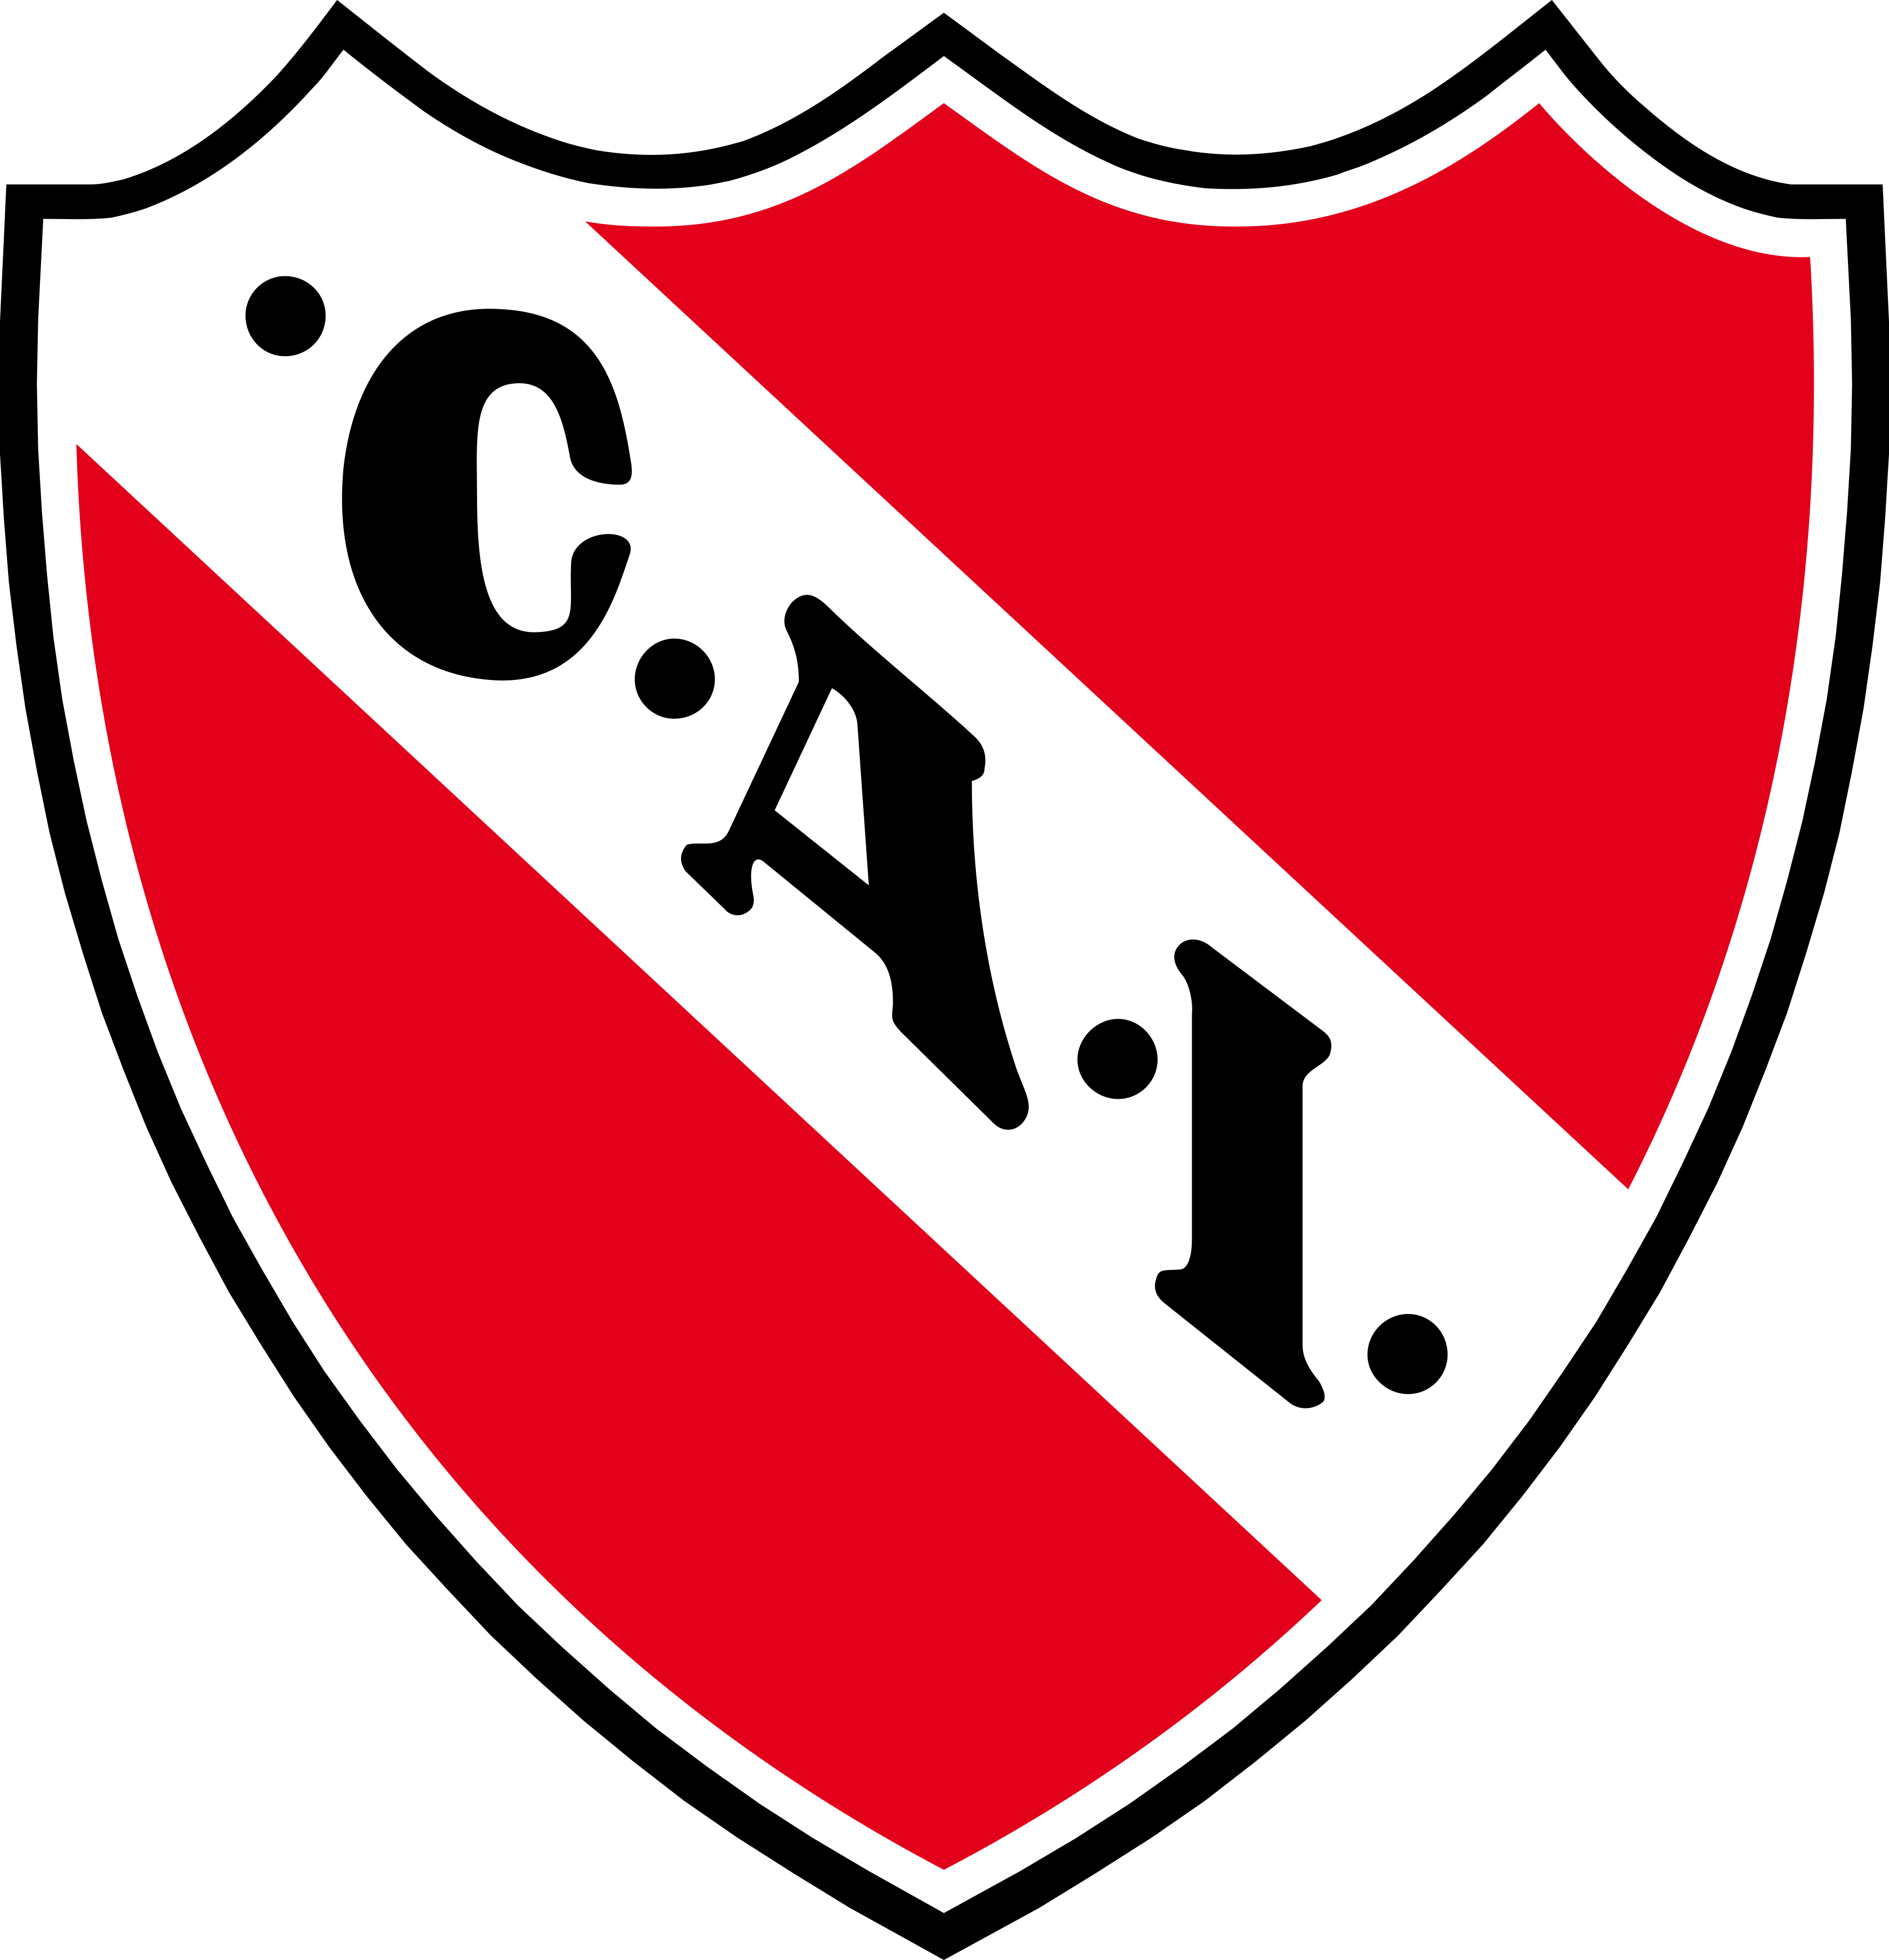 Club Atlético Independiente logo escudo.